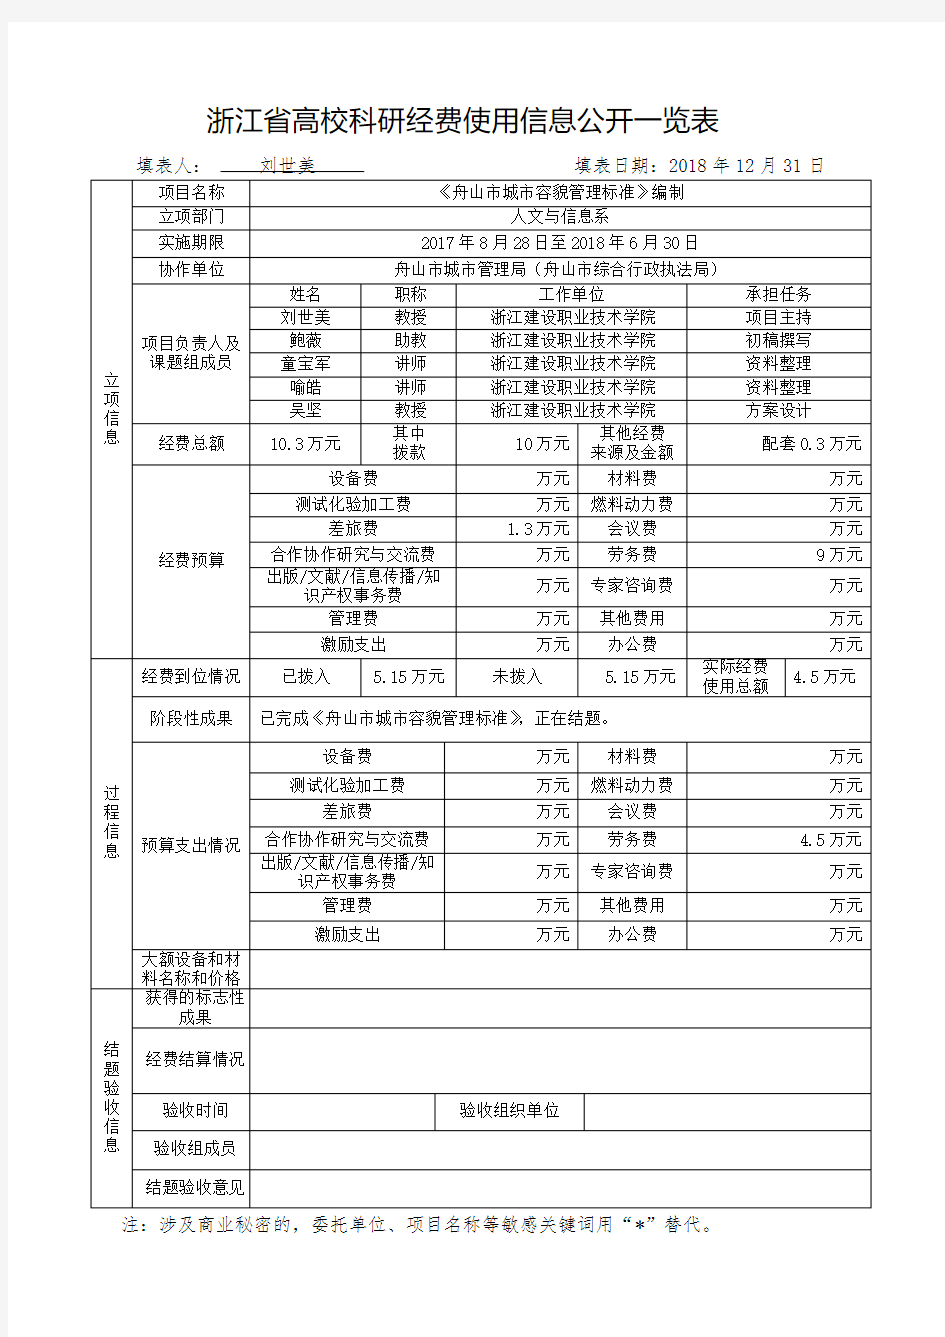 浙江高校科研经费使用信息公开一览表-浙江建设职业技术学院